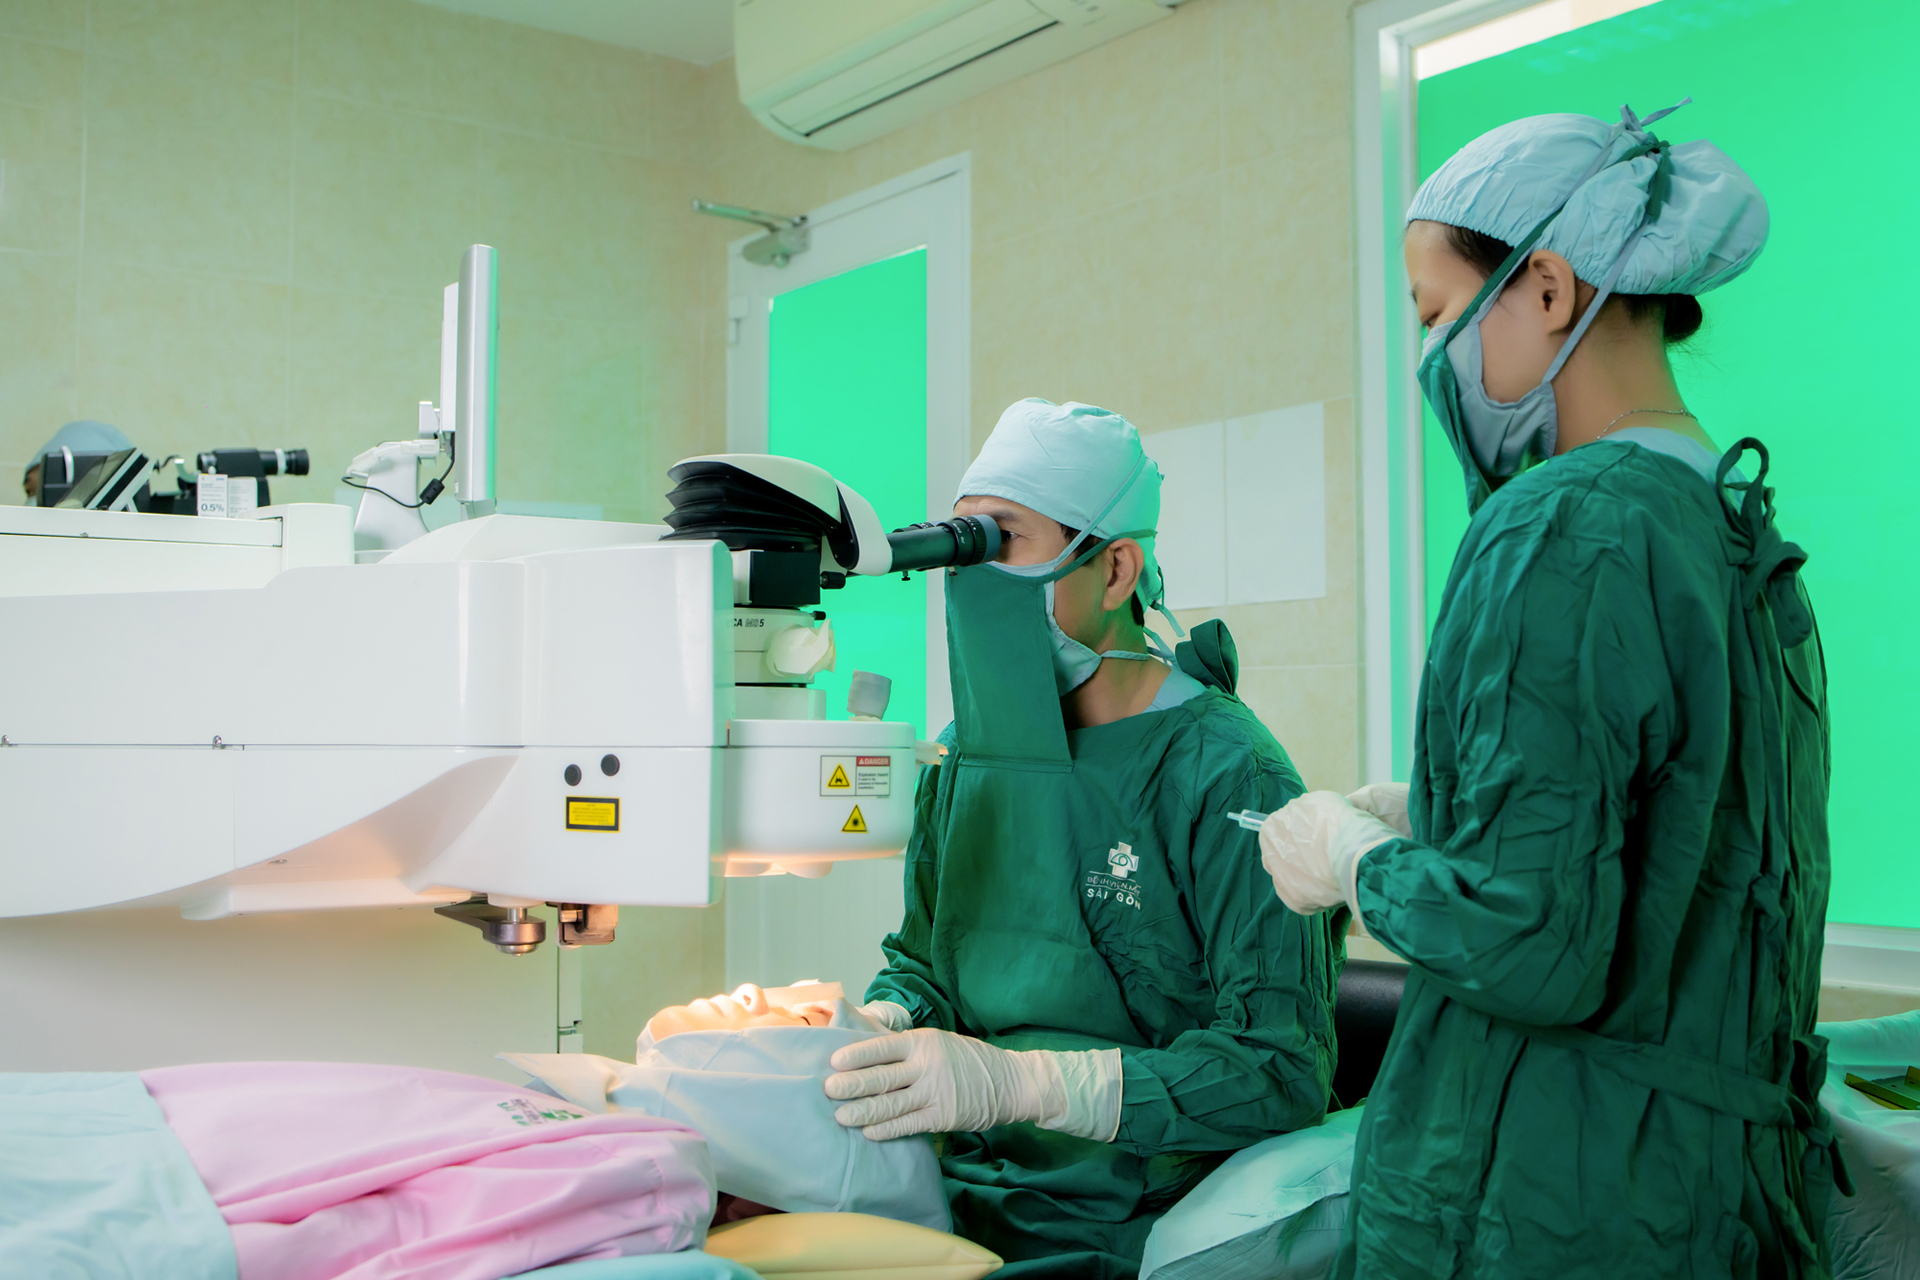 Bệnh viện Mắt Sài Gòn Cần Thơ hỗ trợ 600 suất ưu đãi điều trị đục thủy tinh thể cho người cao tuổi và người có hoàn cảnh khó khăn tại miền Tây. Ảnh: Lê Hoàng Vũ.